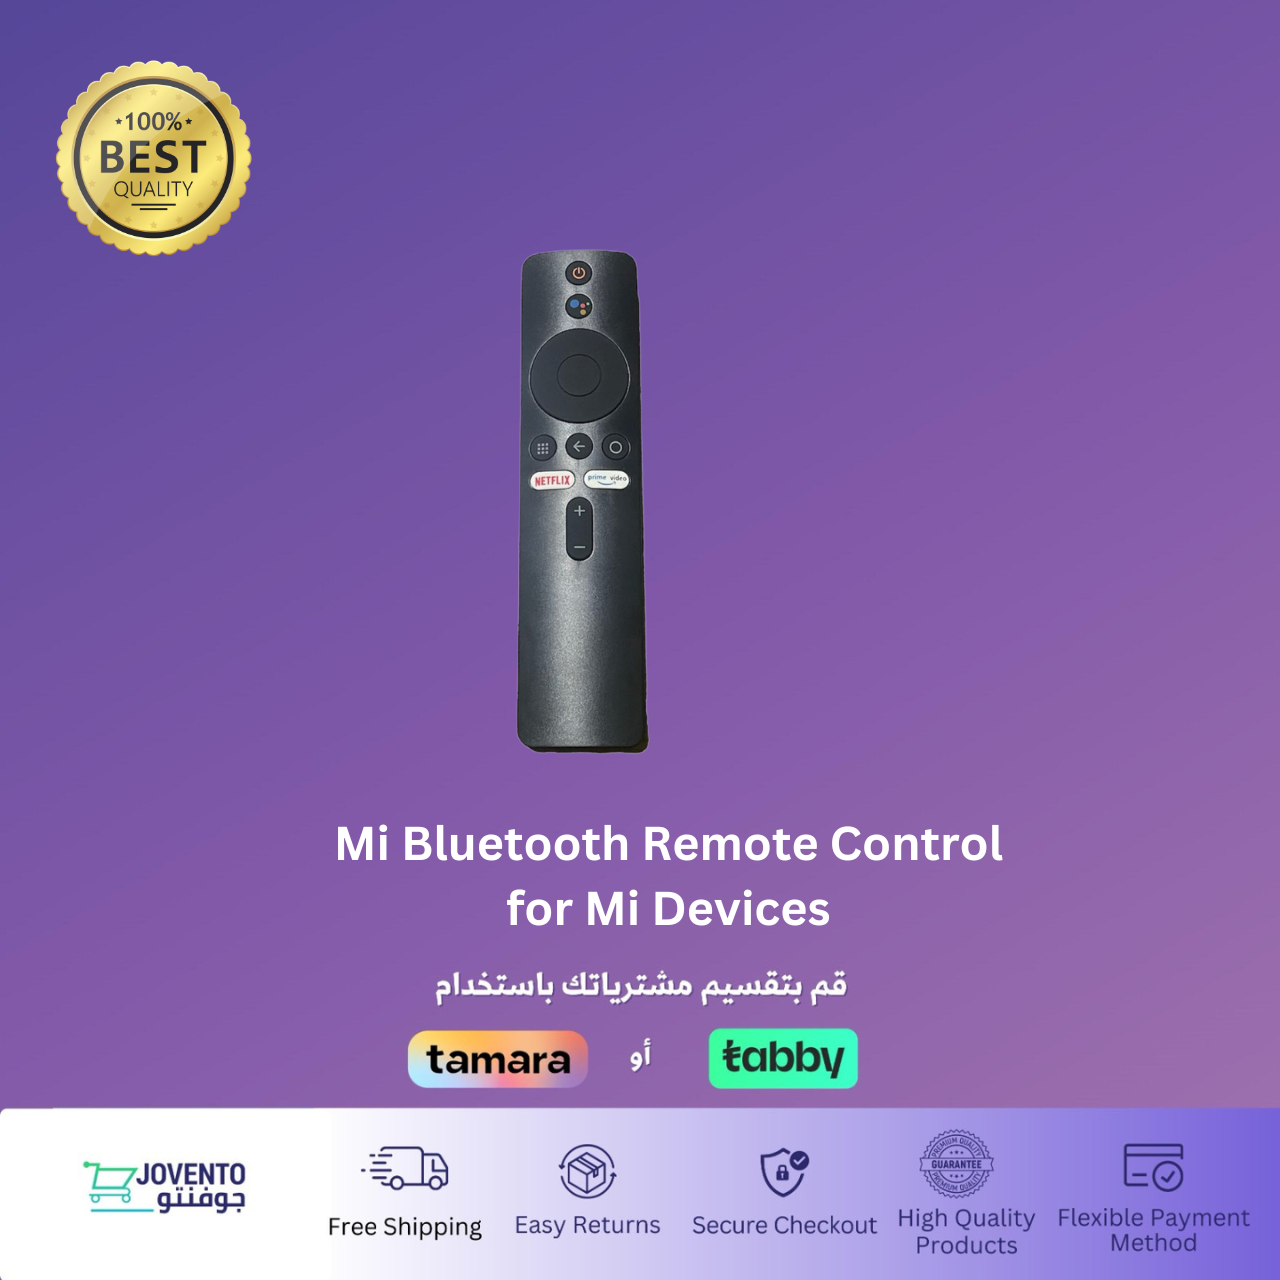 Mi Bluetooth Remote Control for Mi Devices